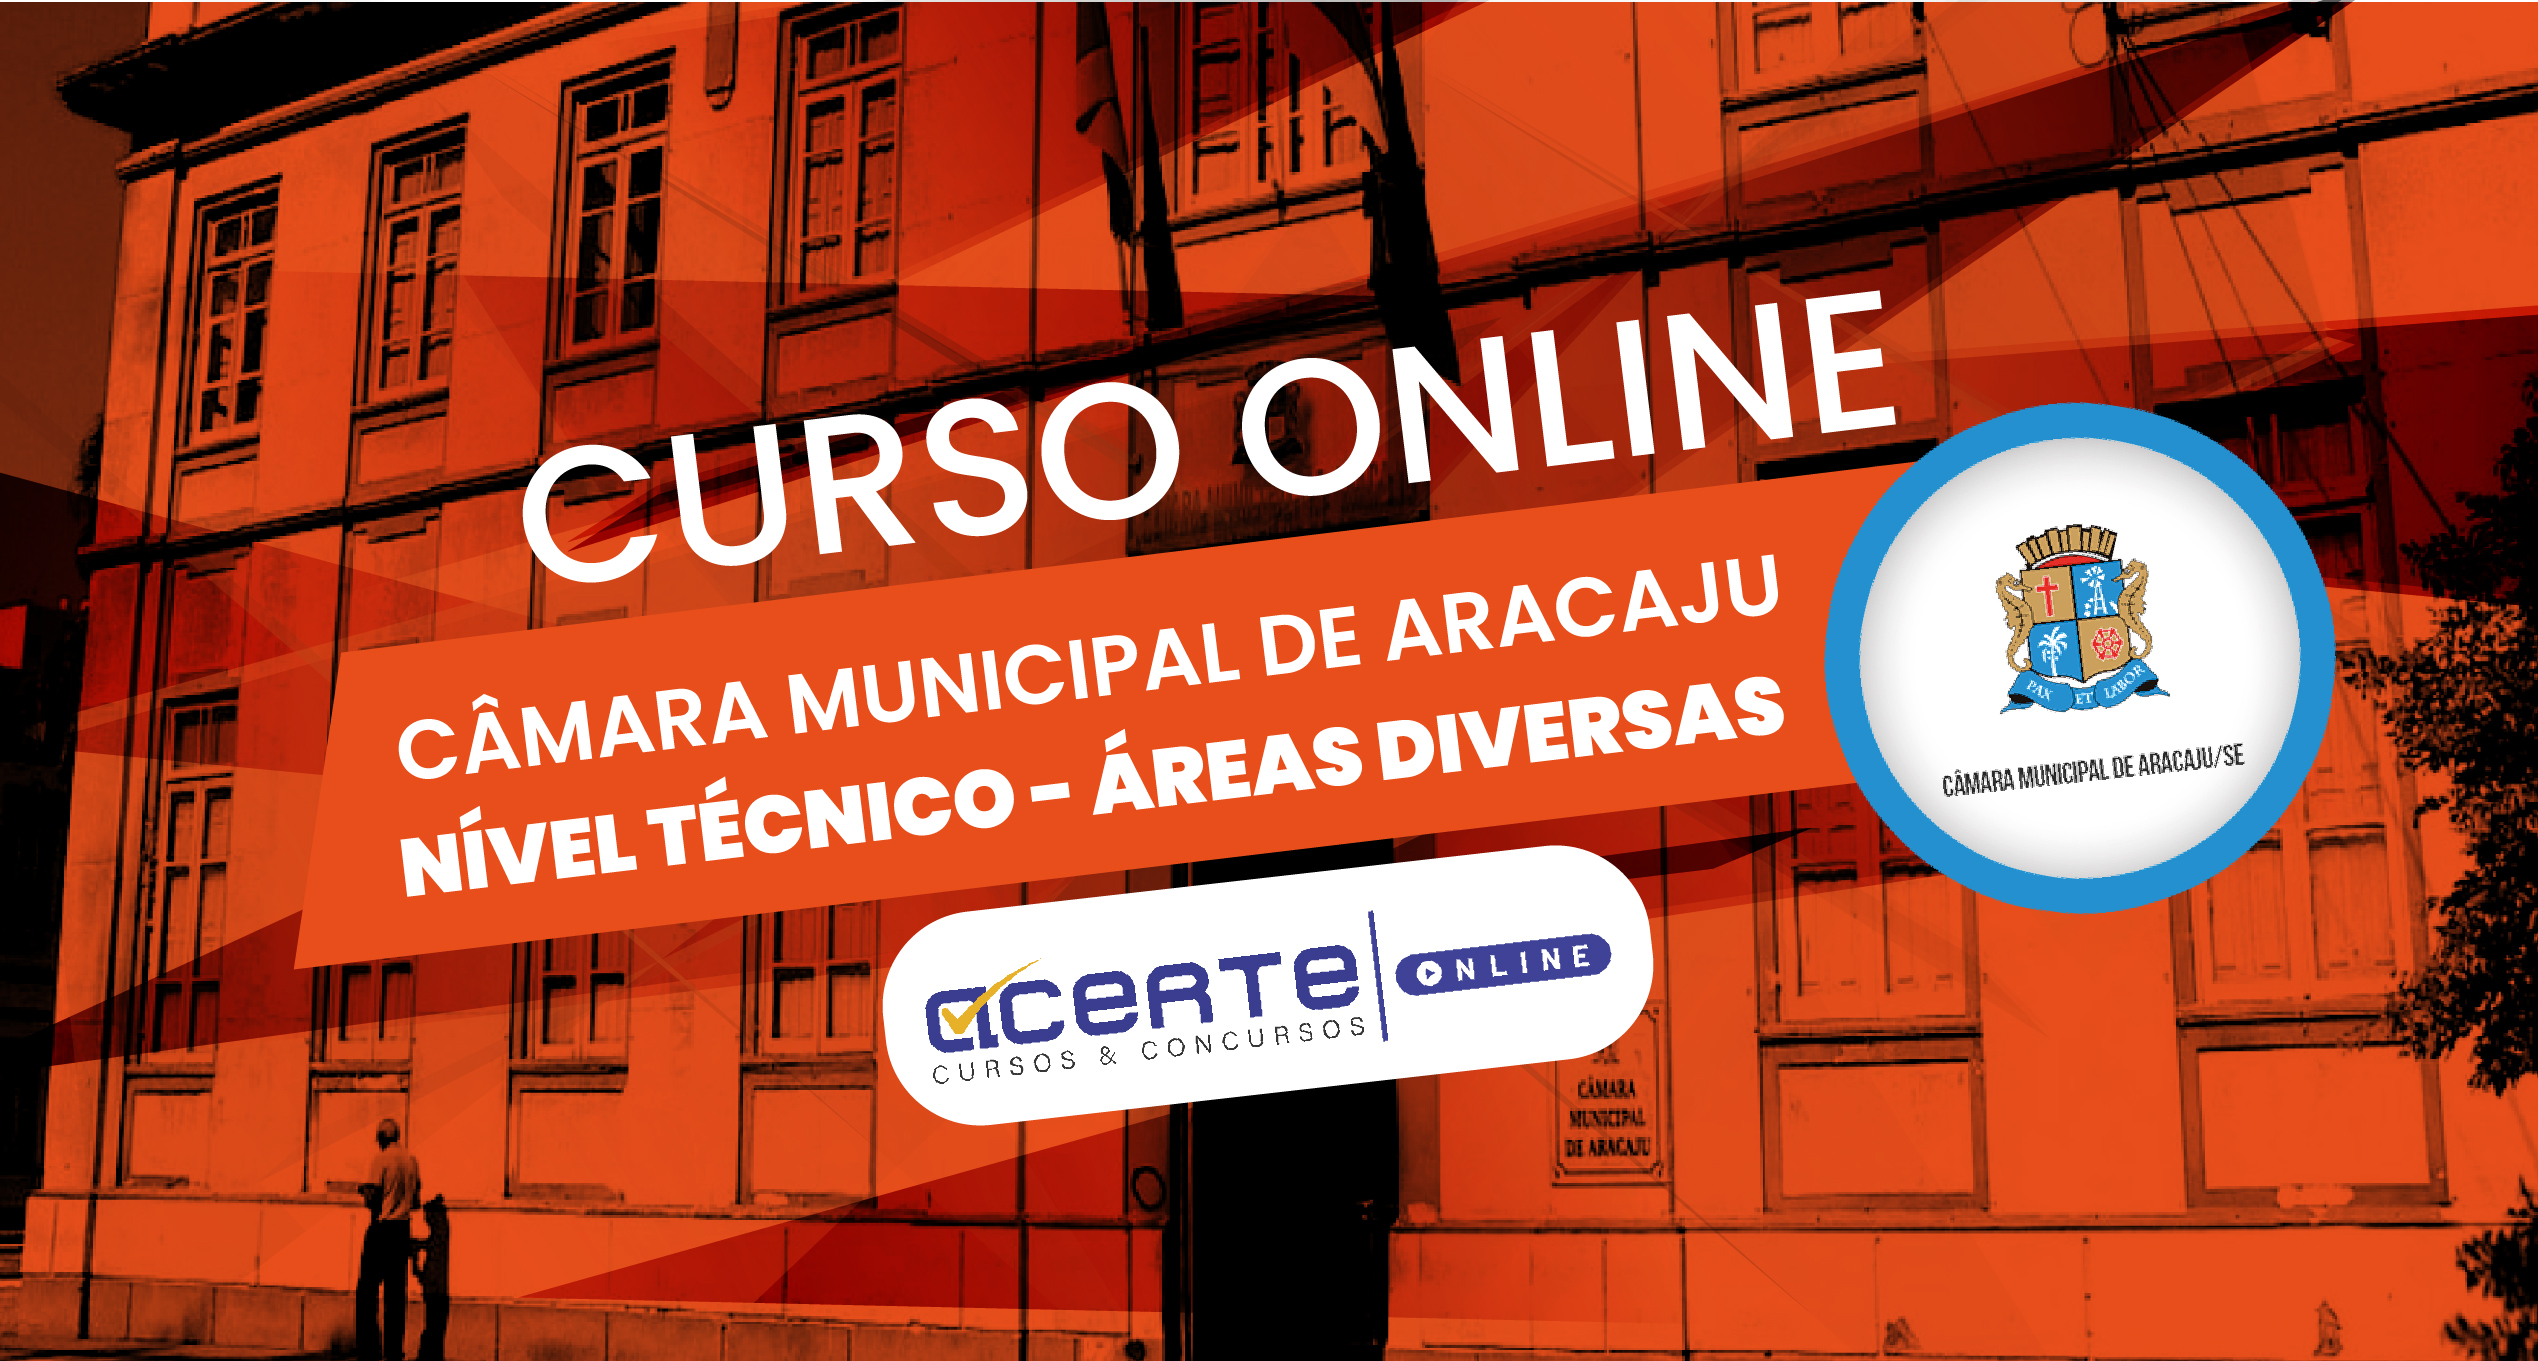 Câmara Municipal de Aracaju - Técnico - Áreas Diversas